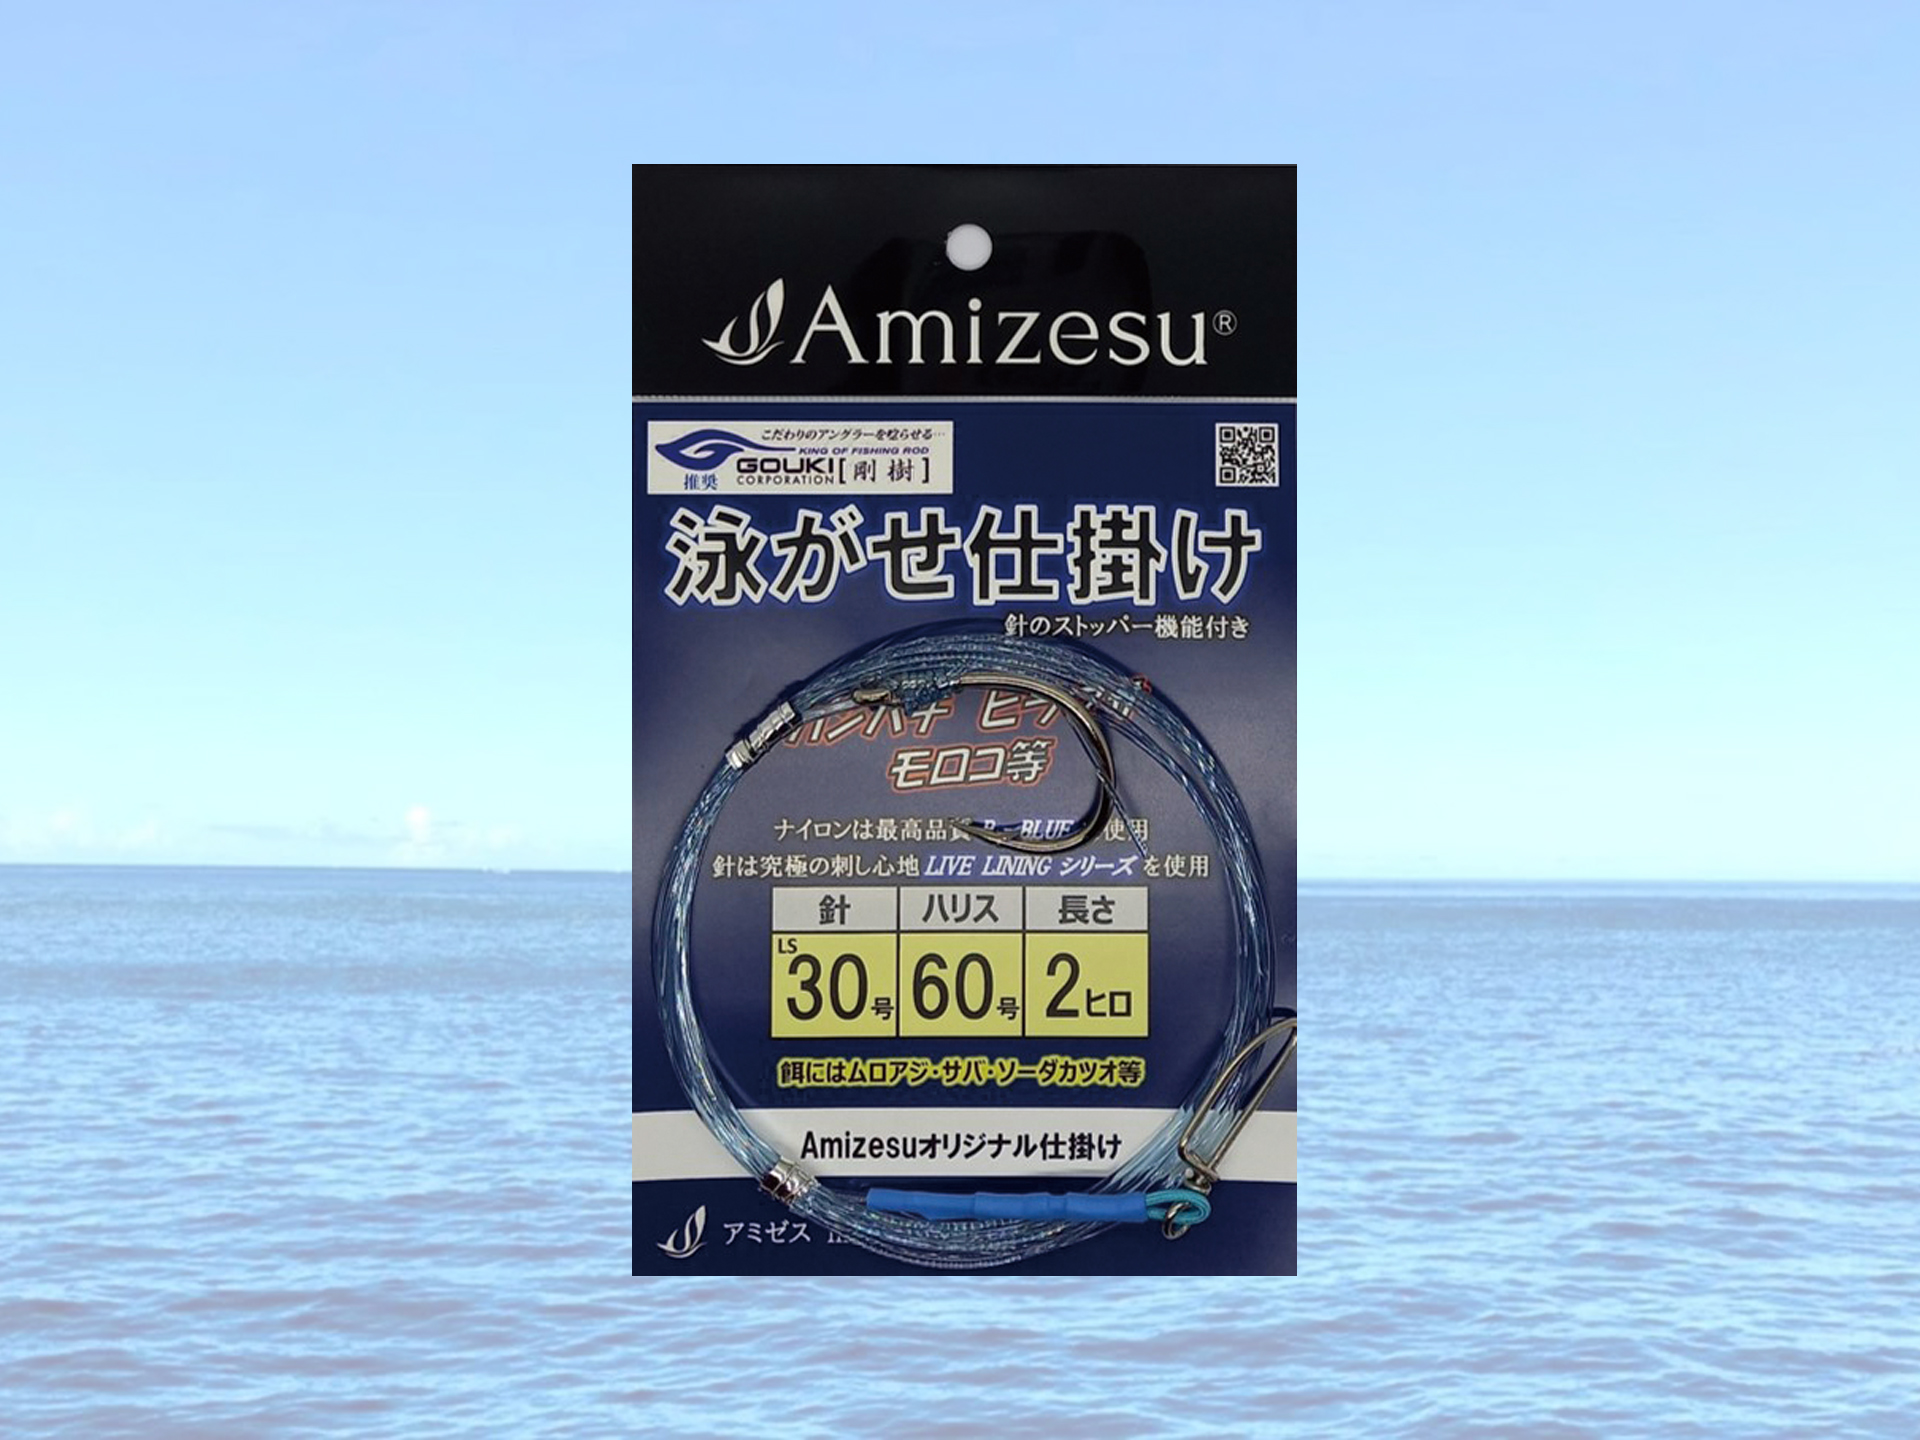 Amizesu泳がせ釣りシリーズ」にカンパチ、ヒラマサ、クエなどの大物に対応する仕掛けが登場 | 釣具新聞 | 釣具業界の業界紙 |  公式ニュースサイト - ルアー用品